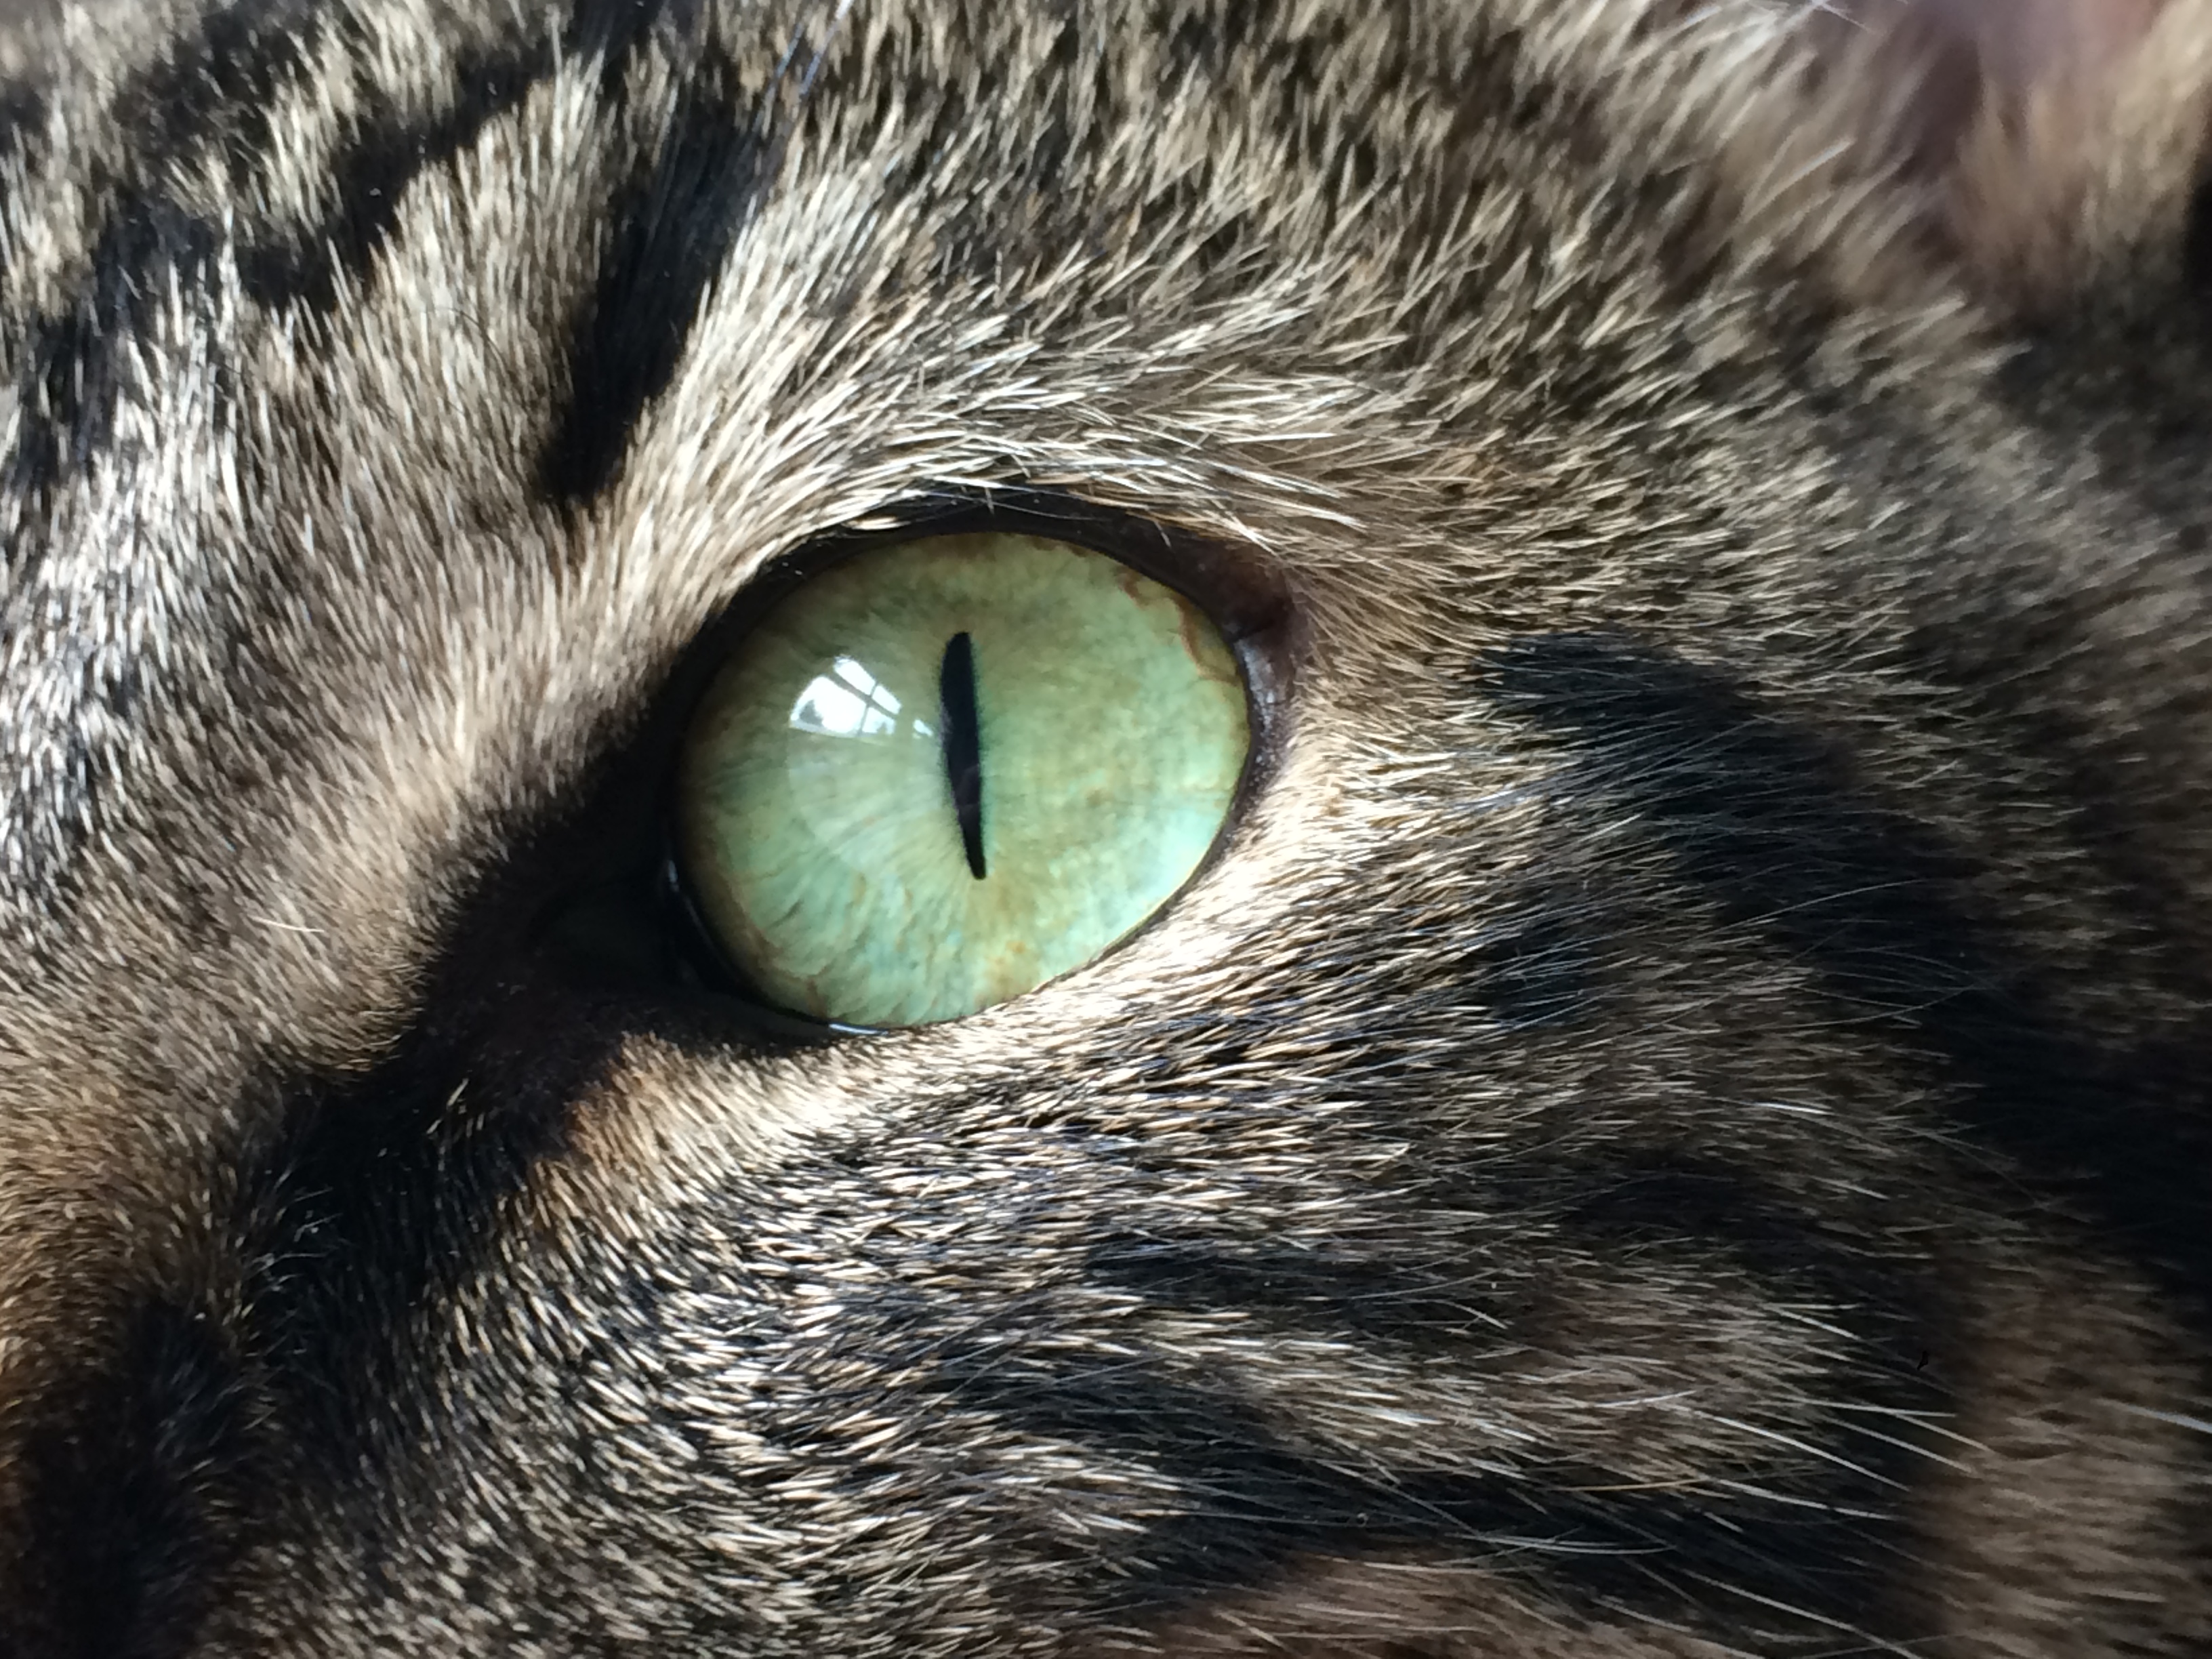 File:Cat's Eye.jpg - Wikipedia